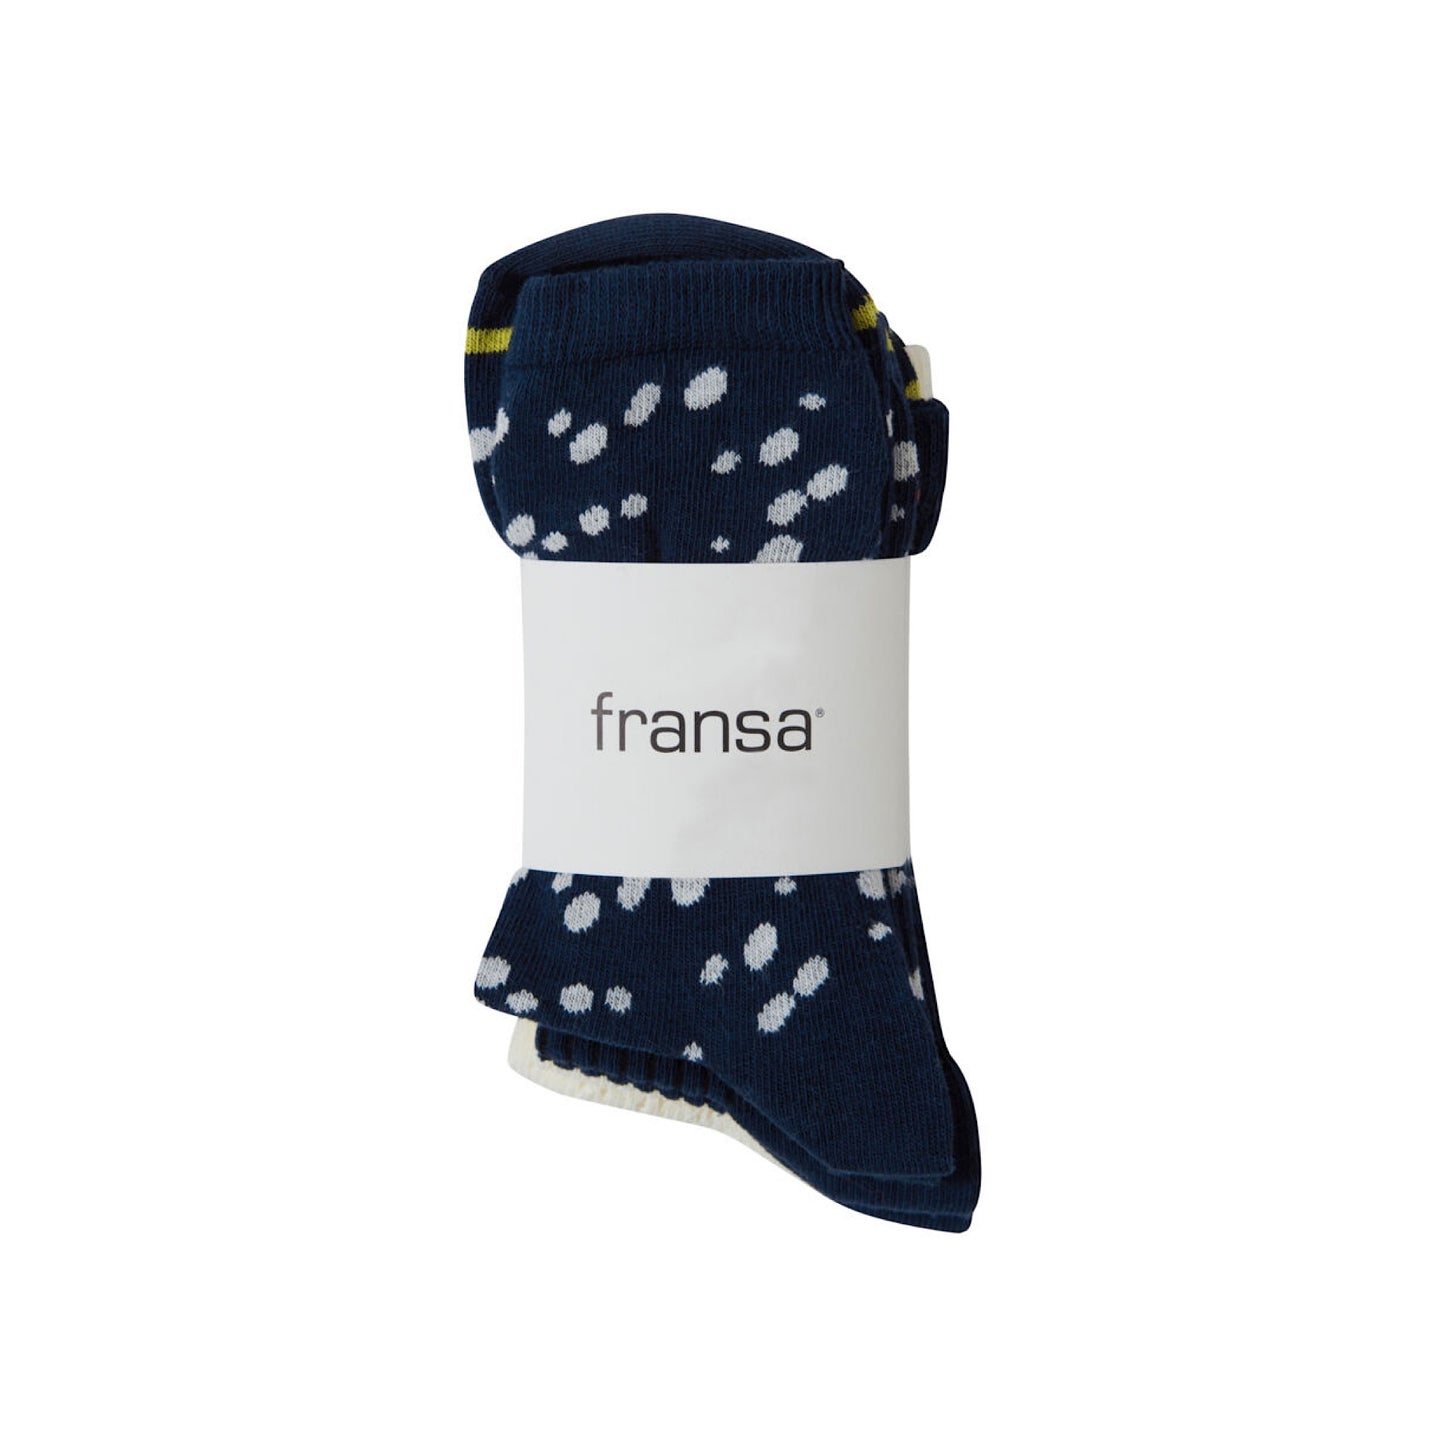 Fransa Swana Socks 3 Pack